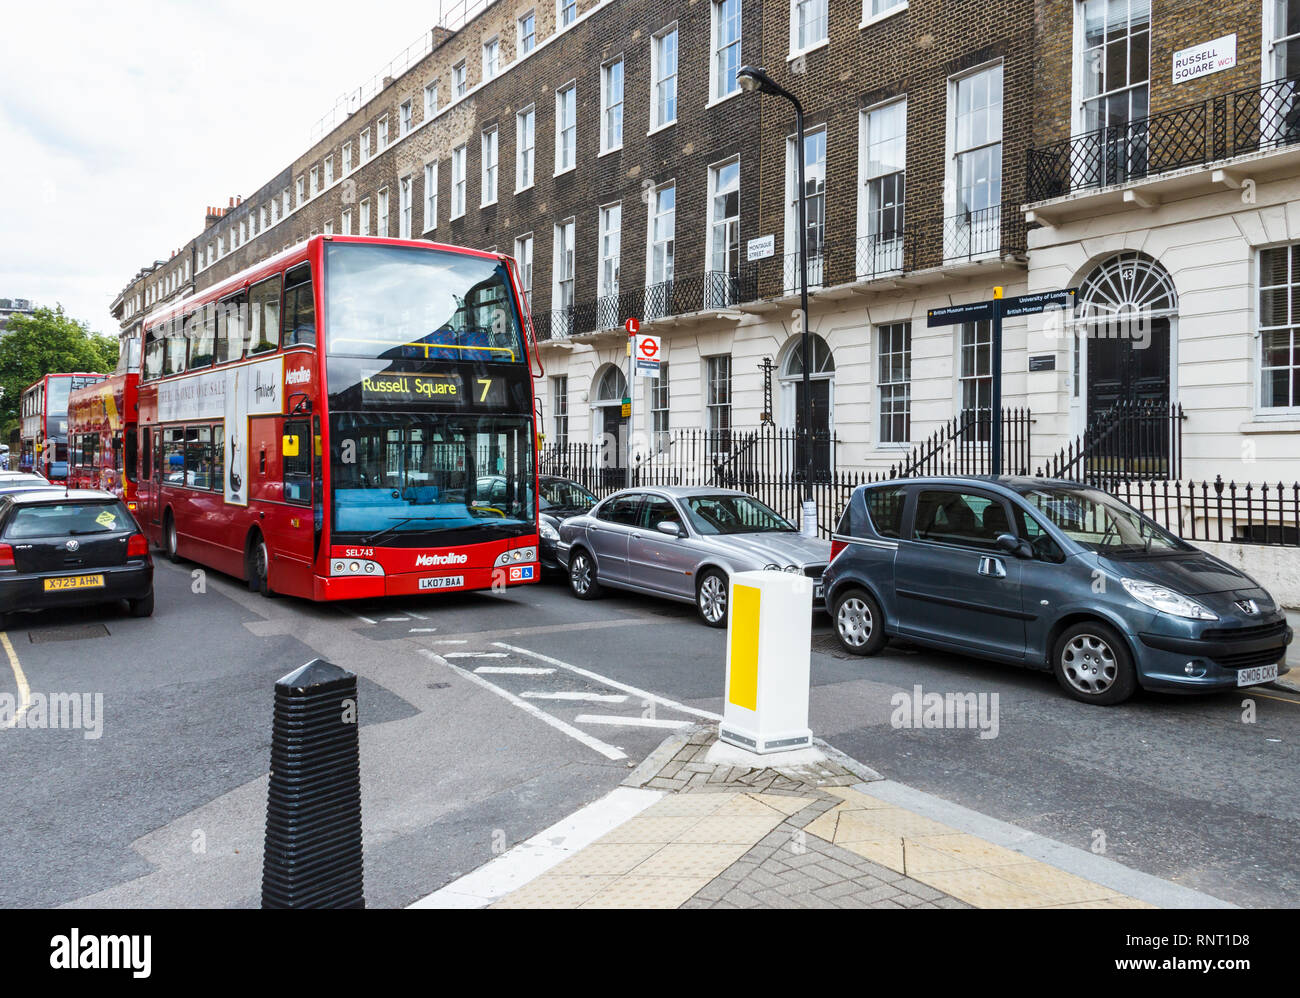 Busse nicht zu überschreiten, weil rücksichtslose Parken in Montague Street, London, UK Stockfoto